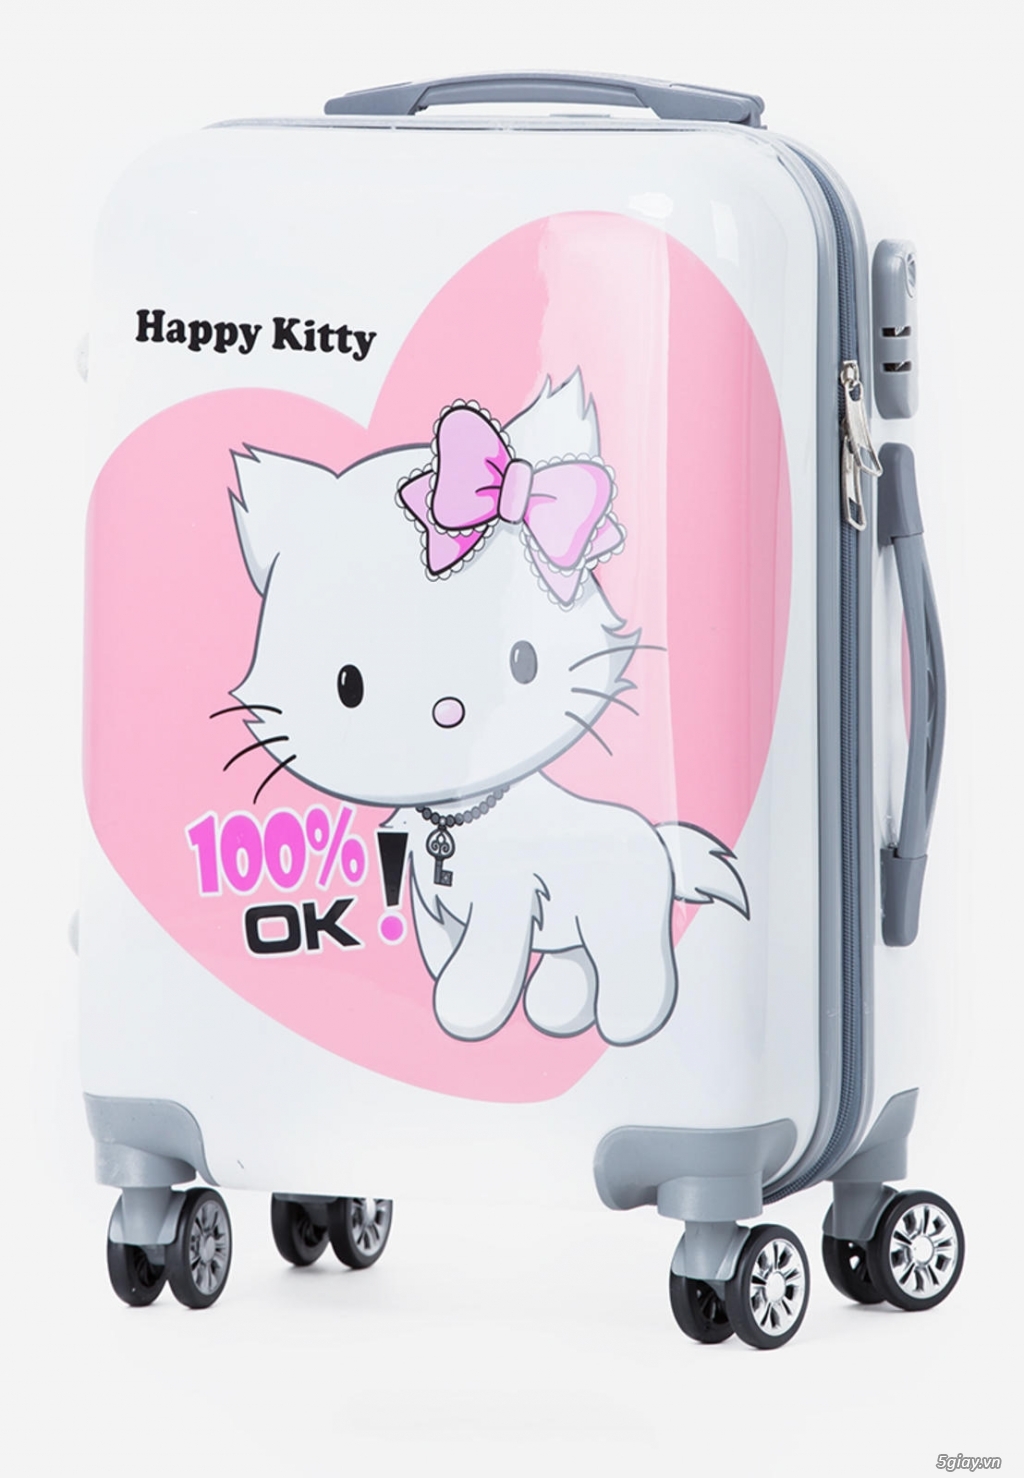 Vali kéo Cavani TT20KI màu trắng in hình Hello Kitty - 1